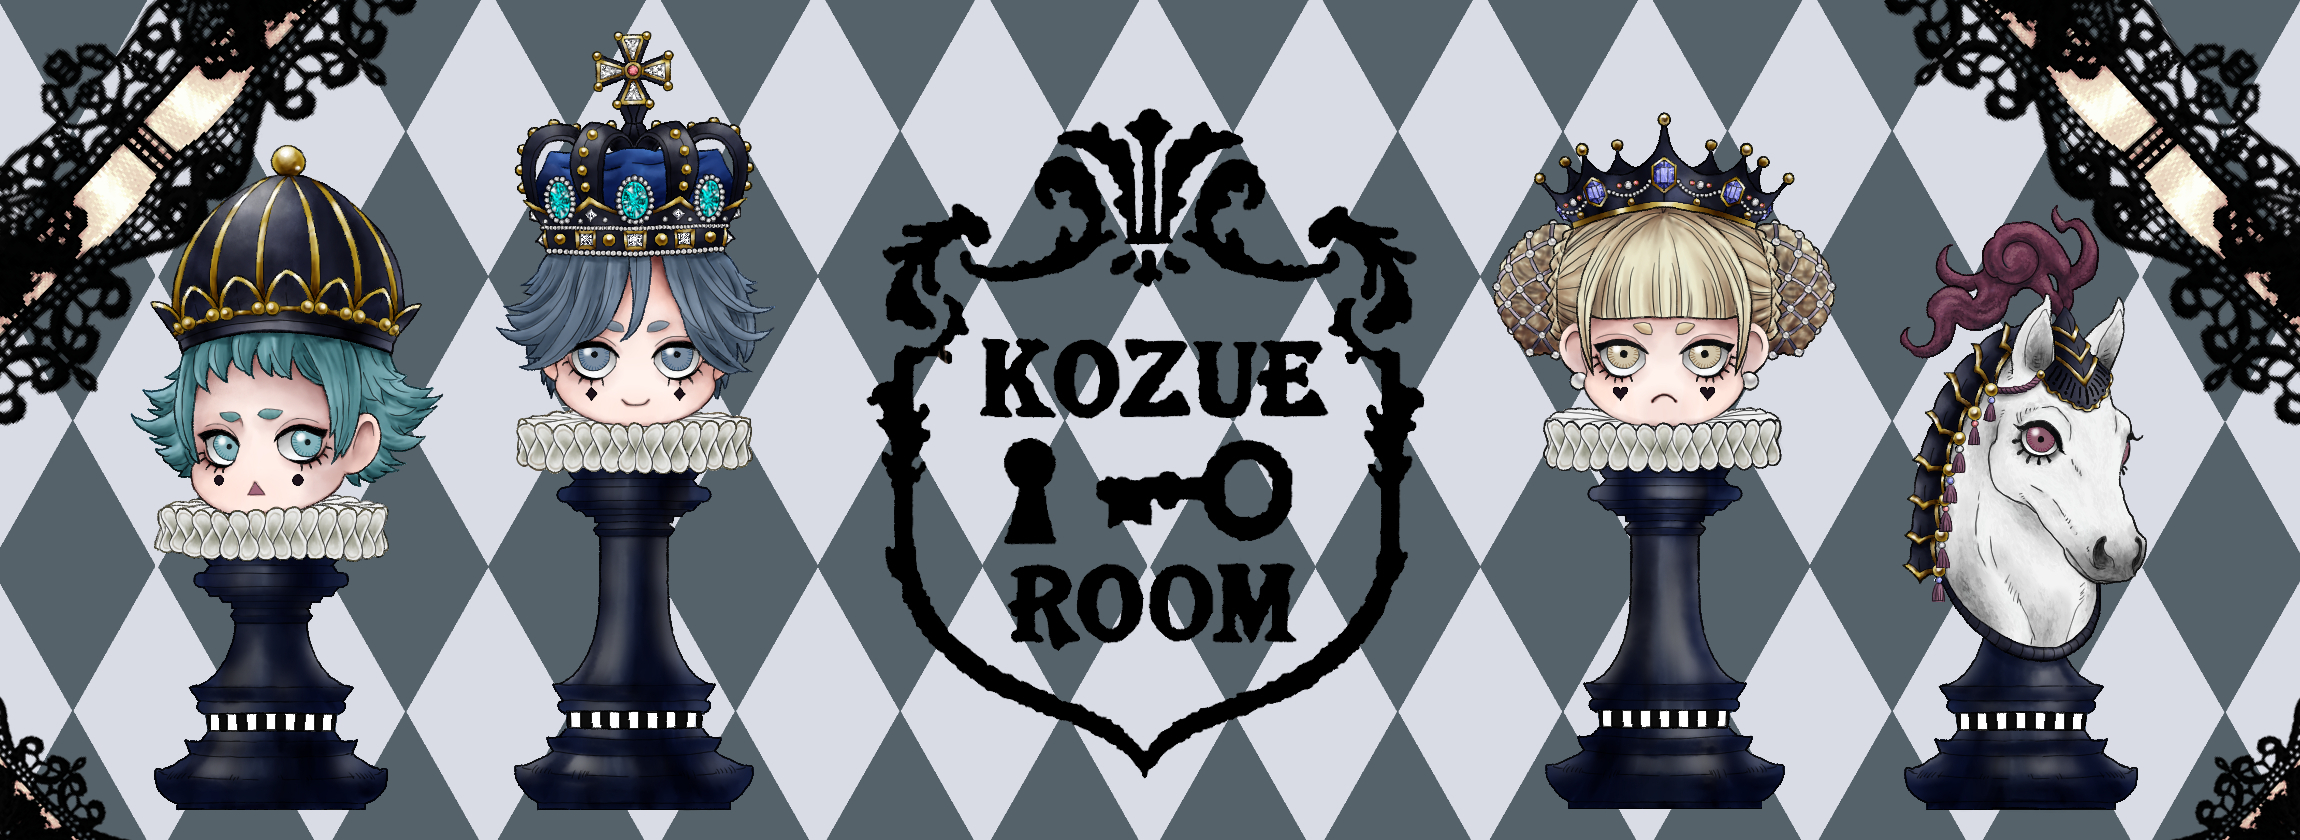 kozue-room